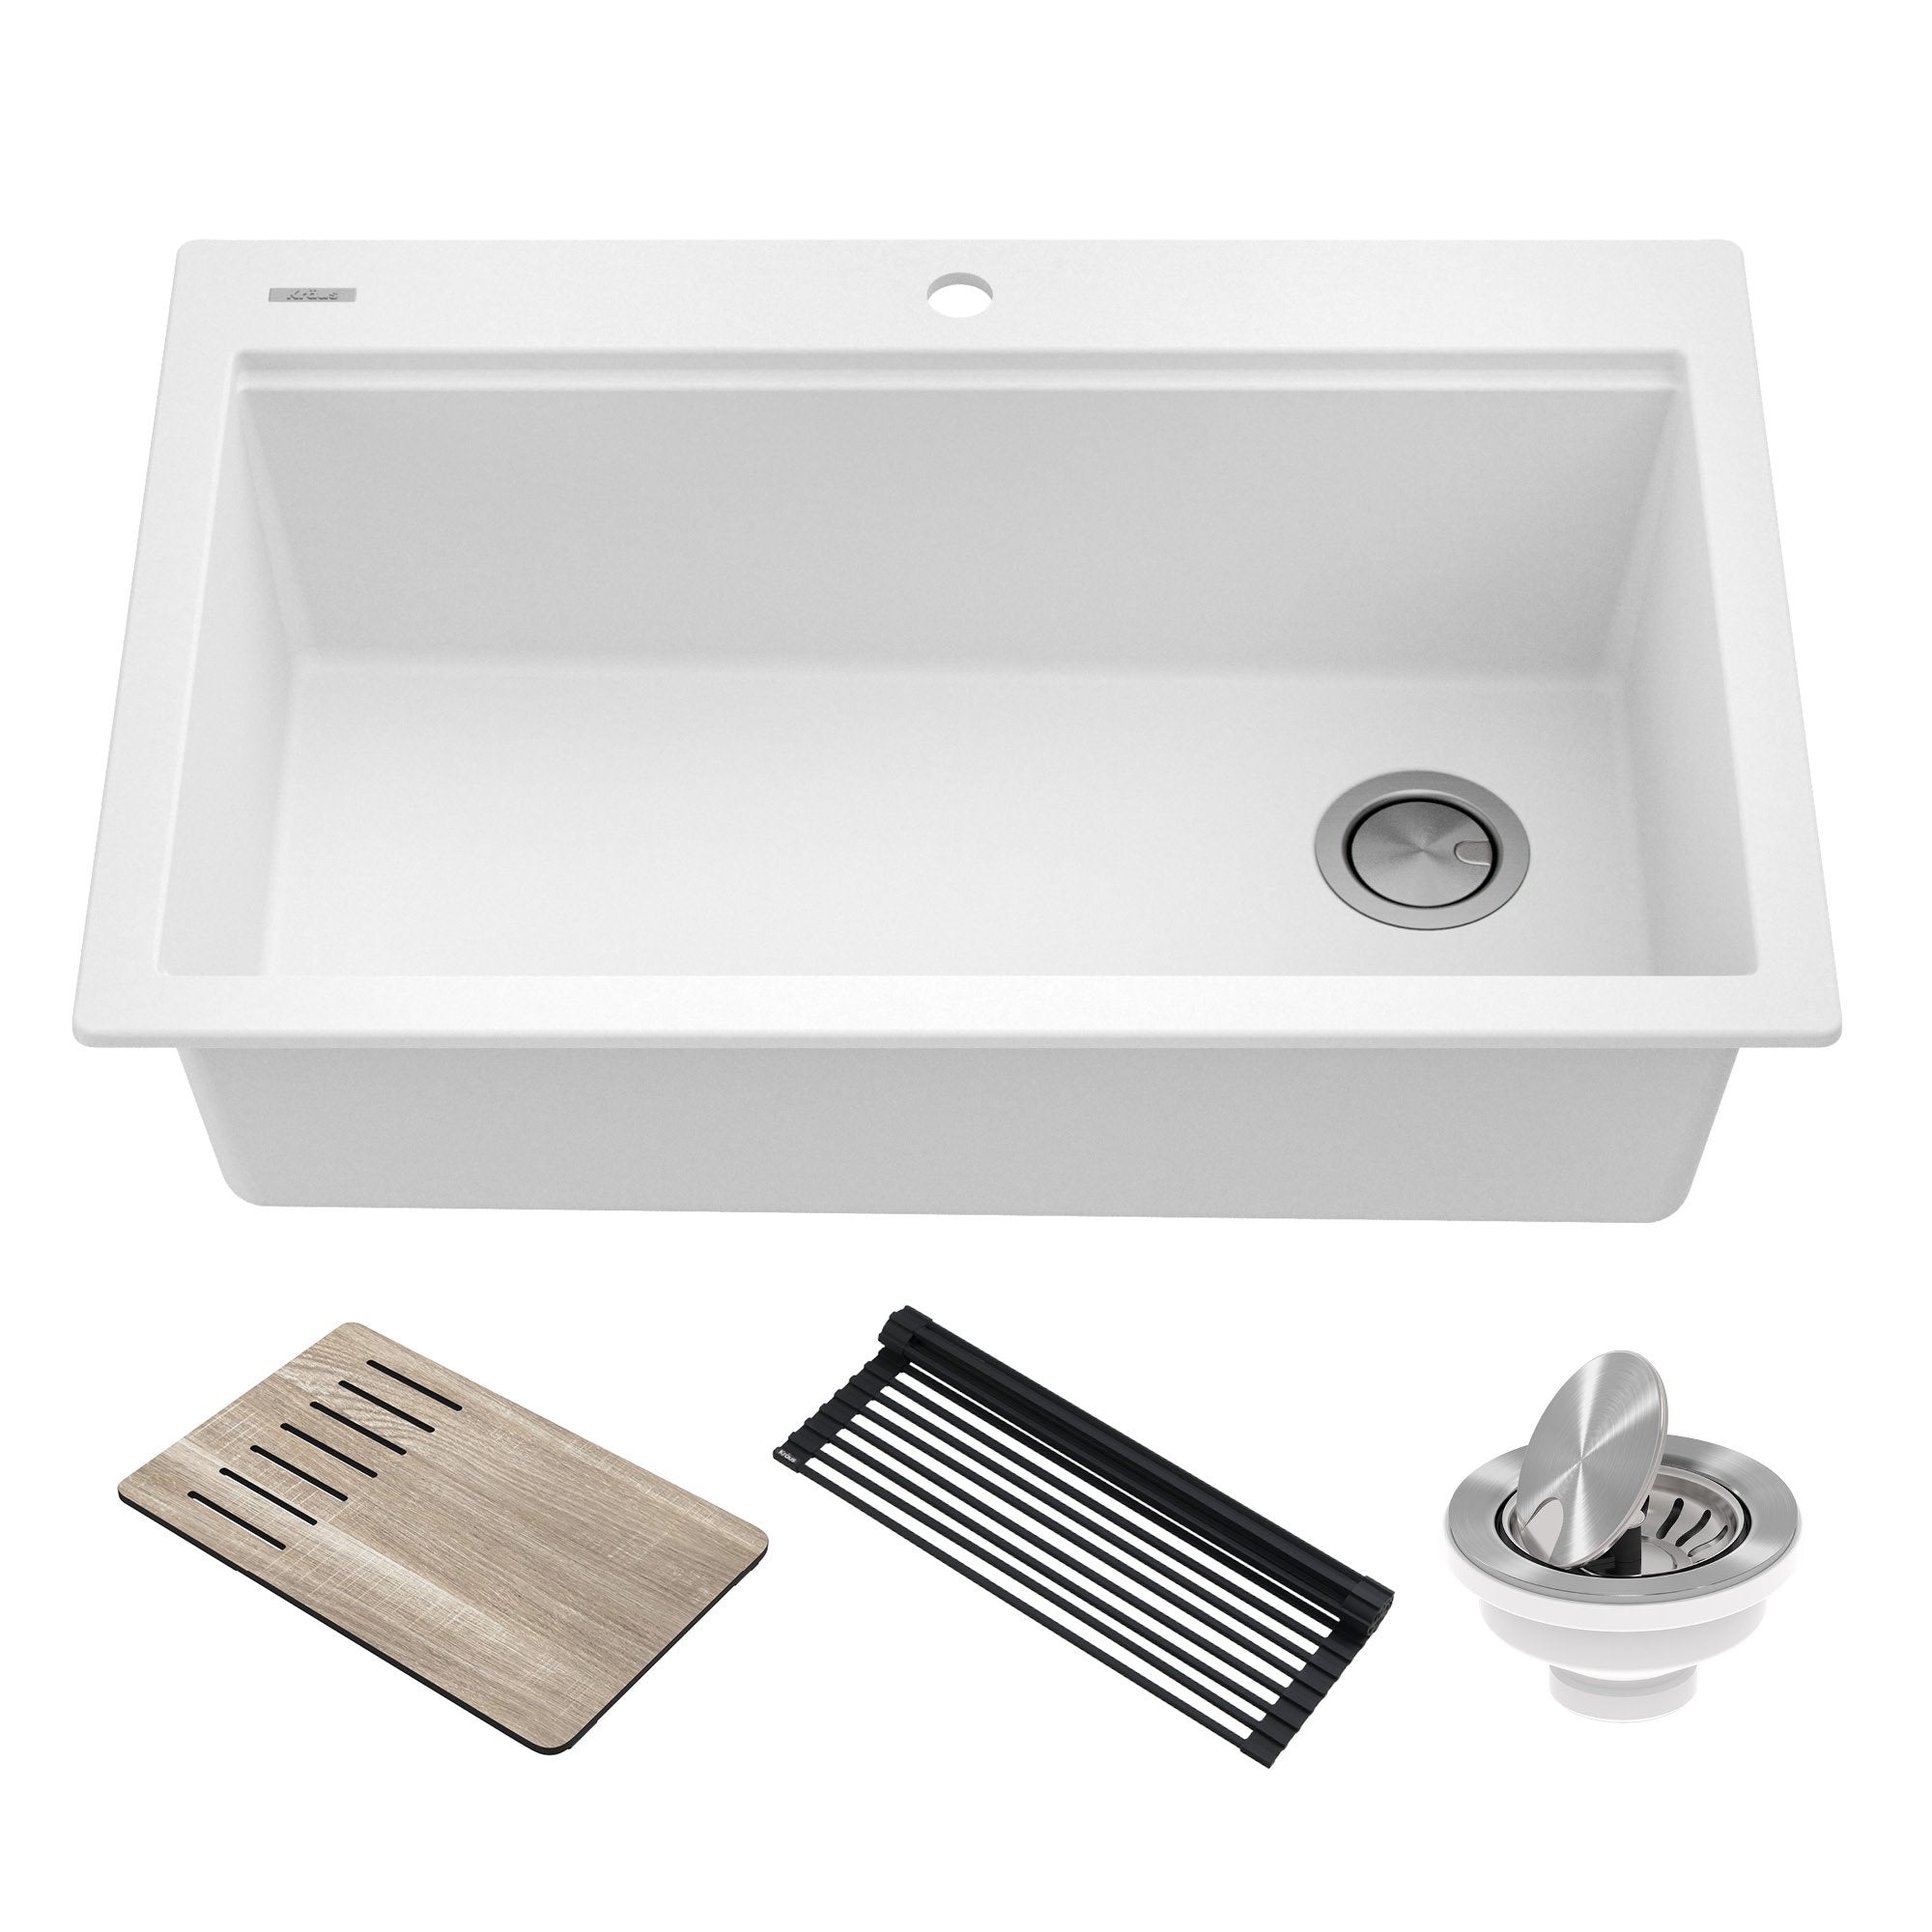 KRAUS Bellucci Workstation 33" Drop-In Granite Composite Kitchen Sink in White with Accessories-Kitchen Sinks-KRAUS